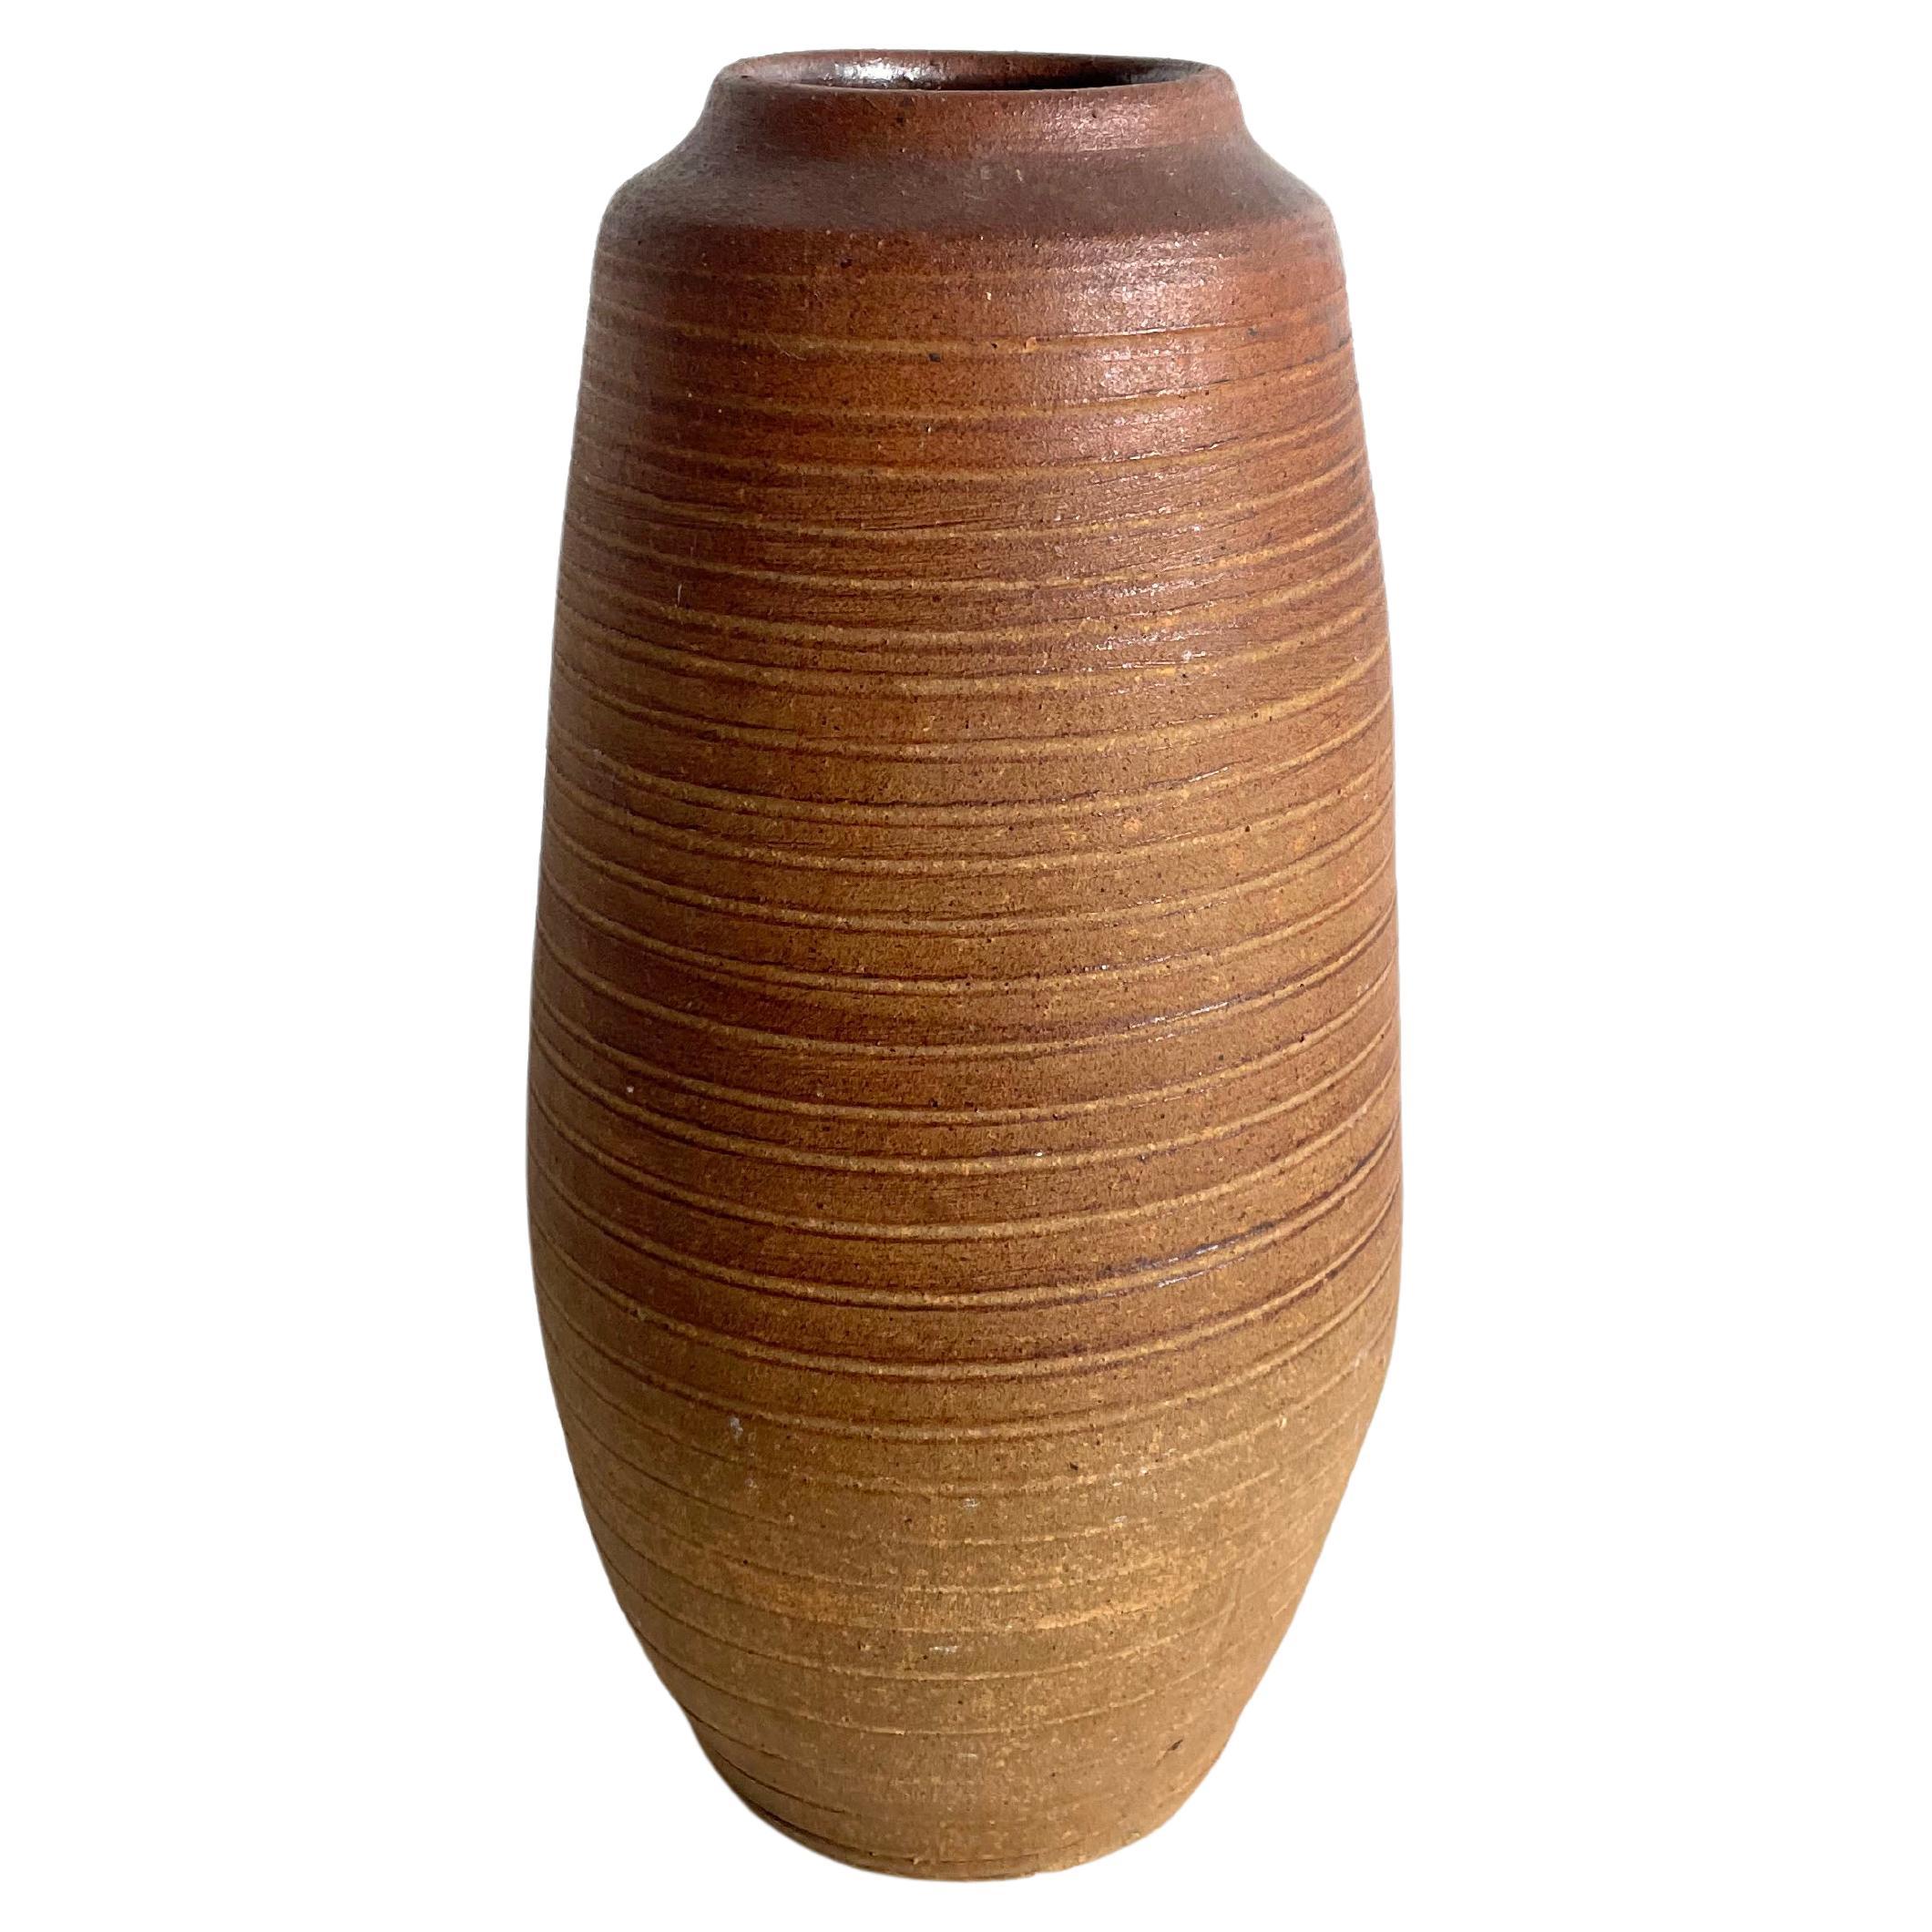 Teracotta-Vase im Vintage-Stil mit strukturierter Oberfläche, Wabi Sabi, Studio Pottery, markiert im Angebot